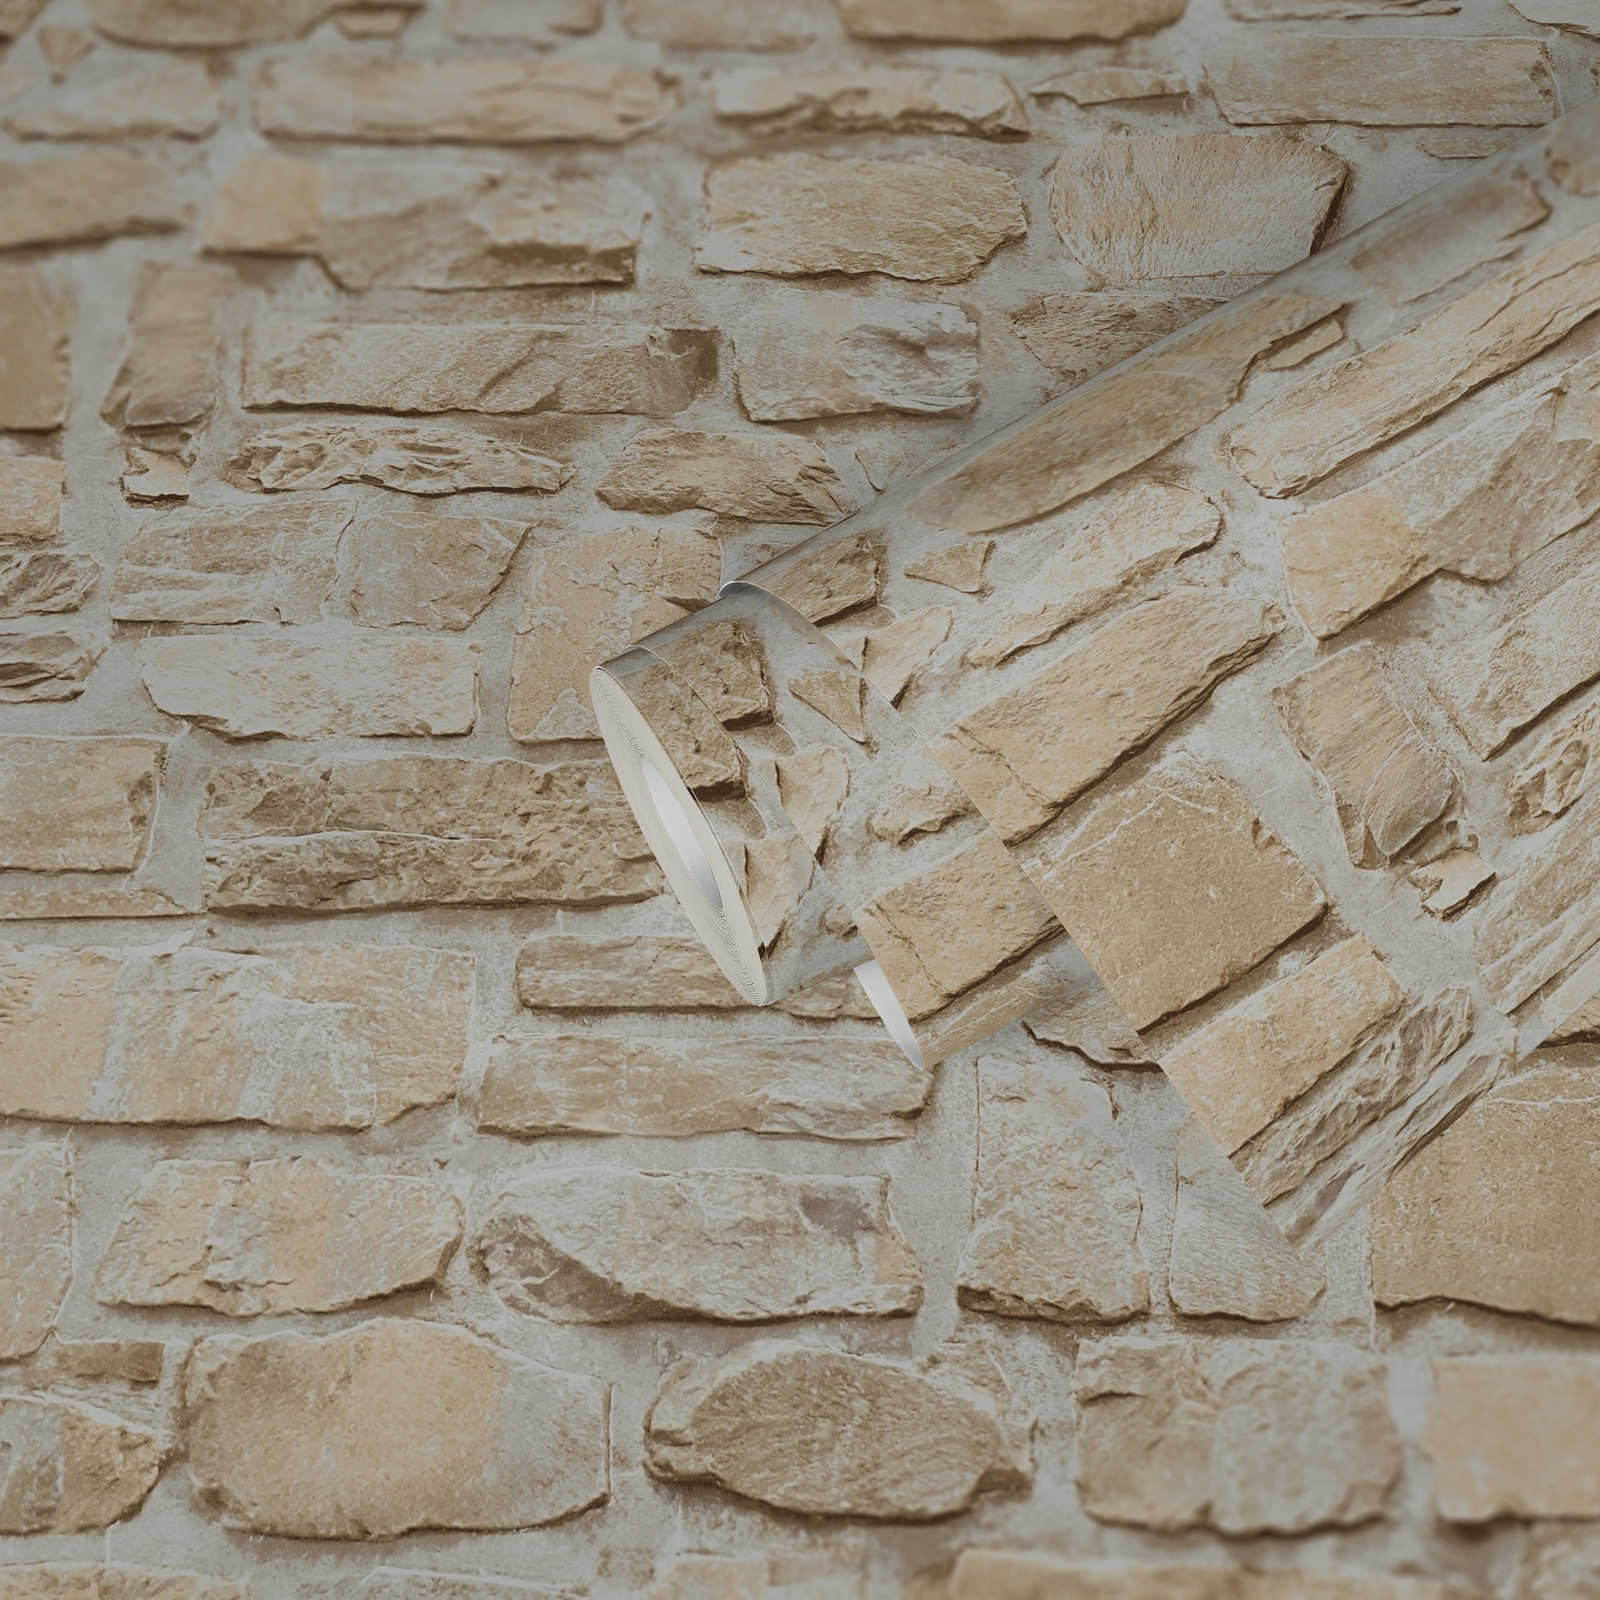             Papier peint adhésif | mur en pierre naturelle aspect 3D - beige
        